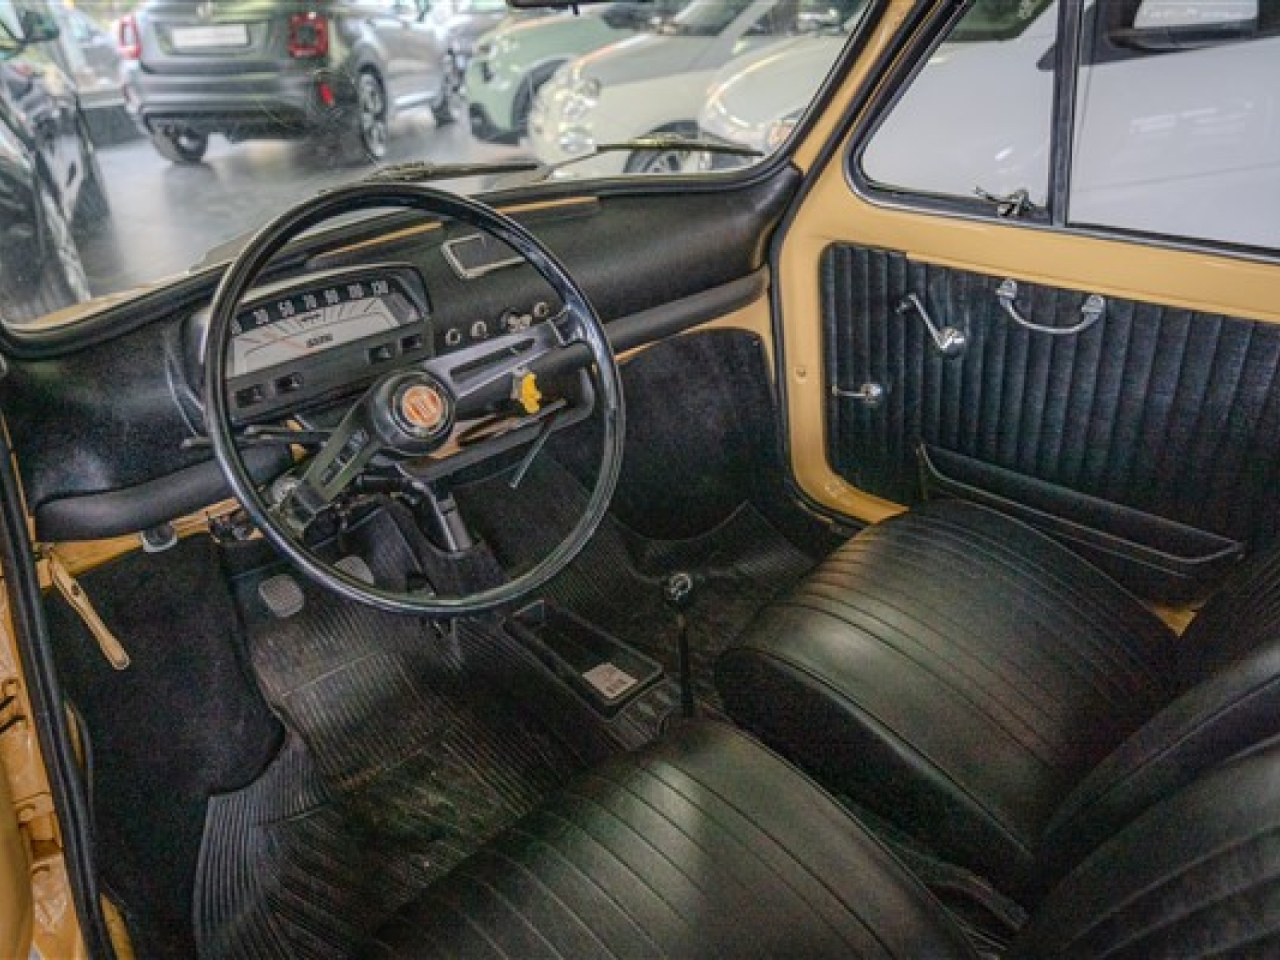 1971 Fiat 500 Epoca